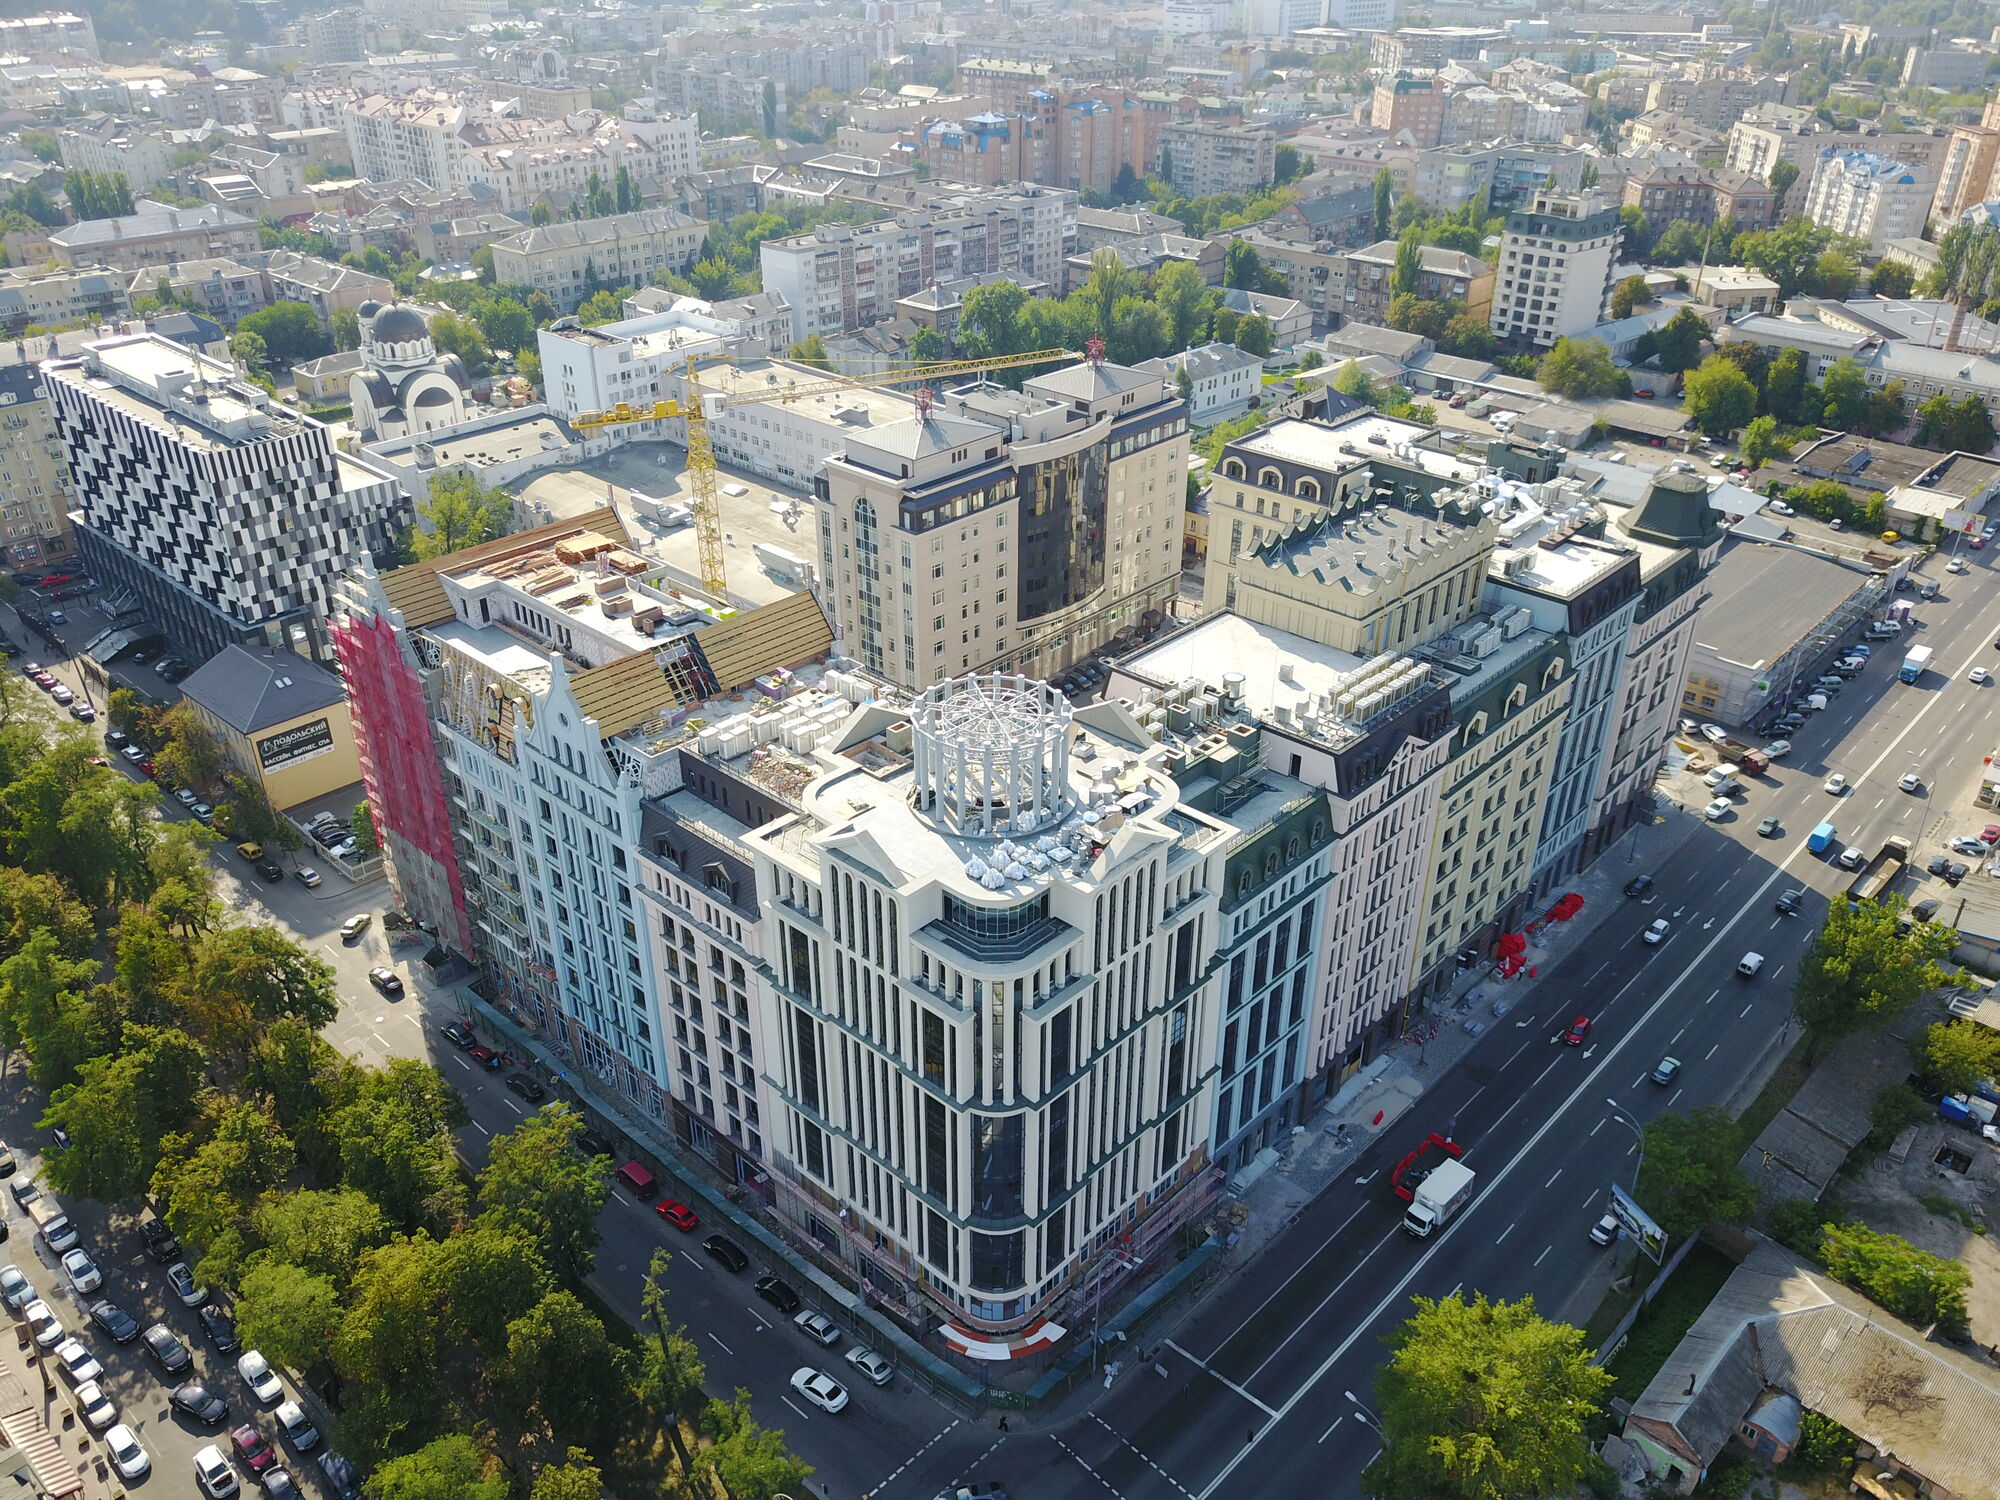 Бизнес-центр ASTARTA поддержал реновацию Подола киевскими властями